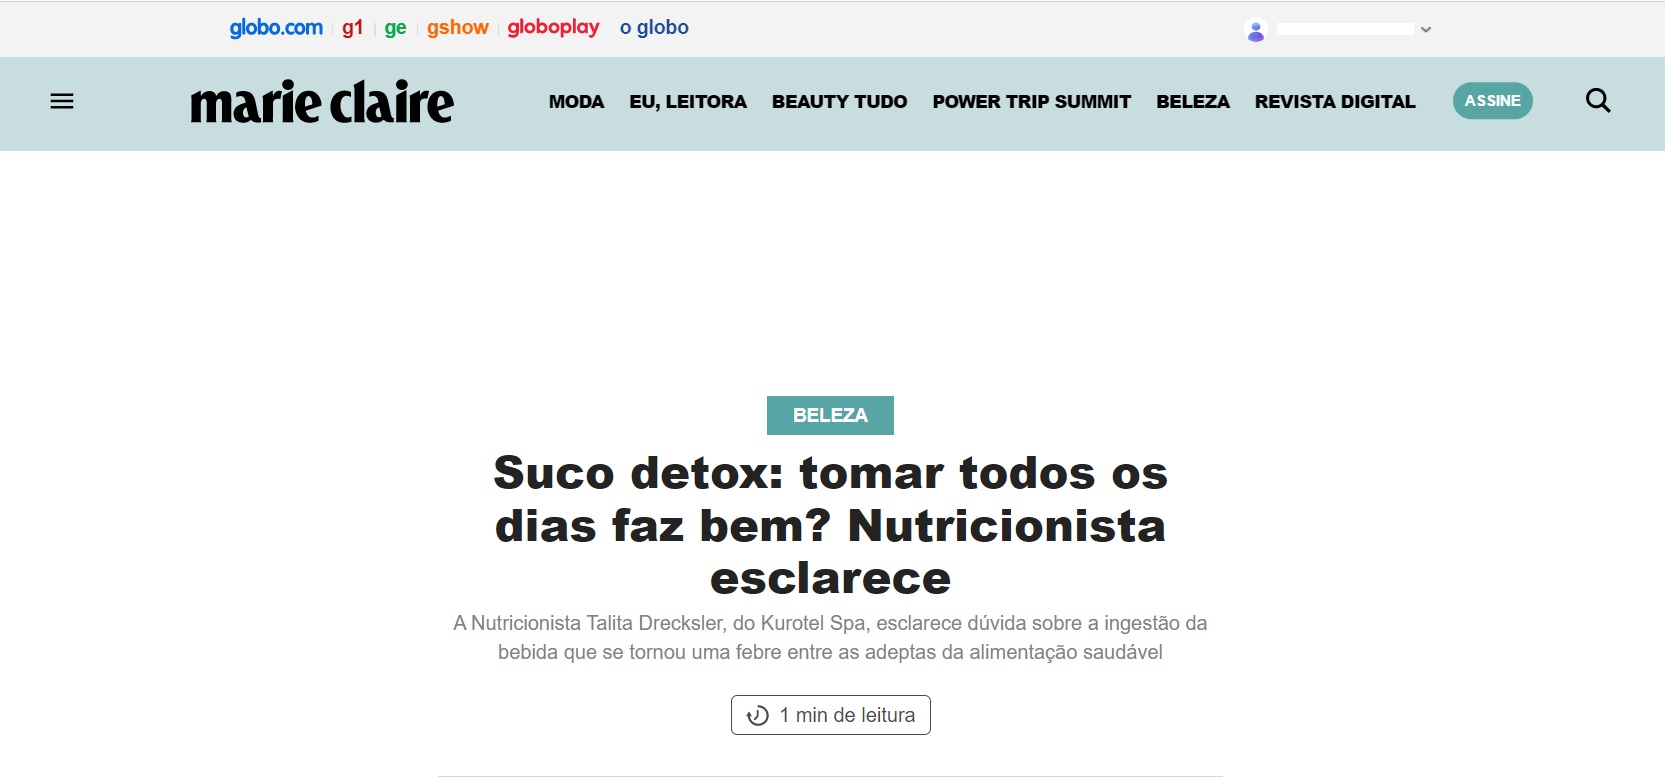 Reportagem sobre suco detox - Imagem extraída do site revistamarieclarie.globo.com